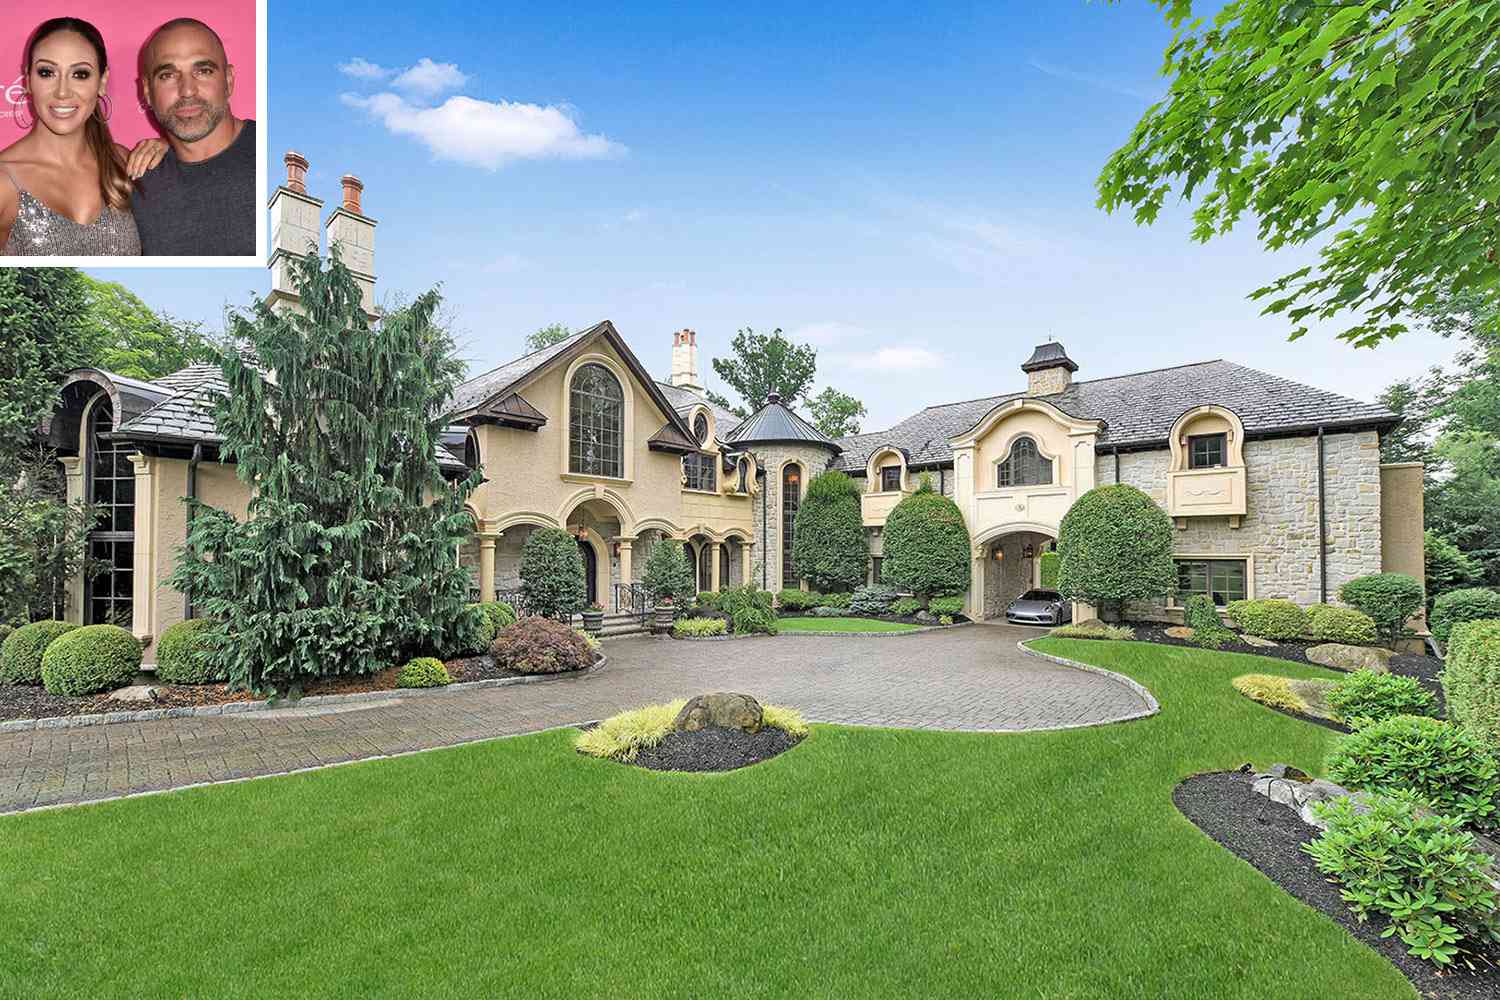 Melissa & Joe Gorga Sell NJ Mansion for $2.5 Million | PEOPLE.com